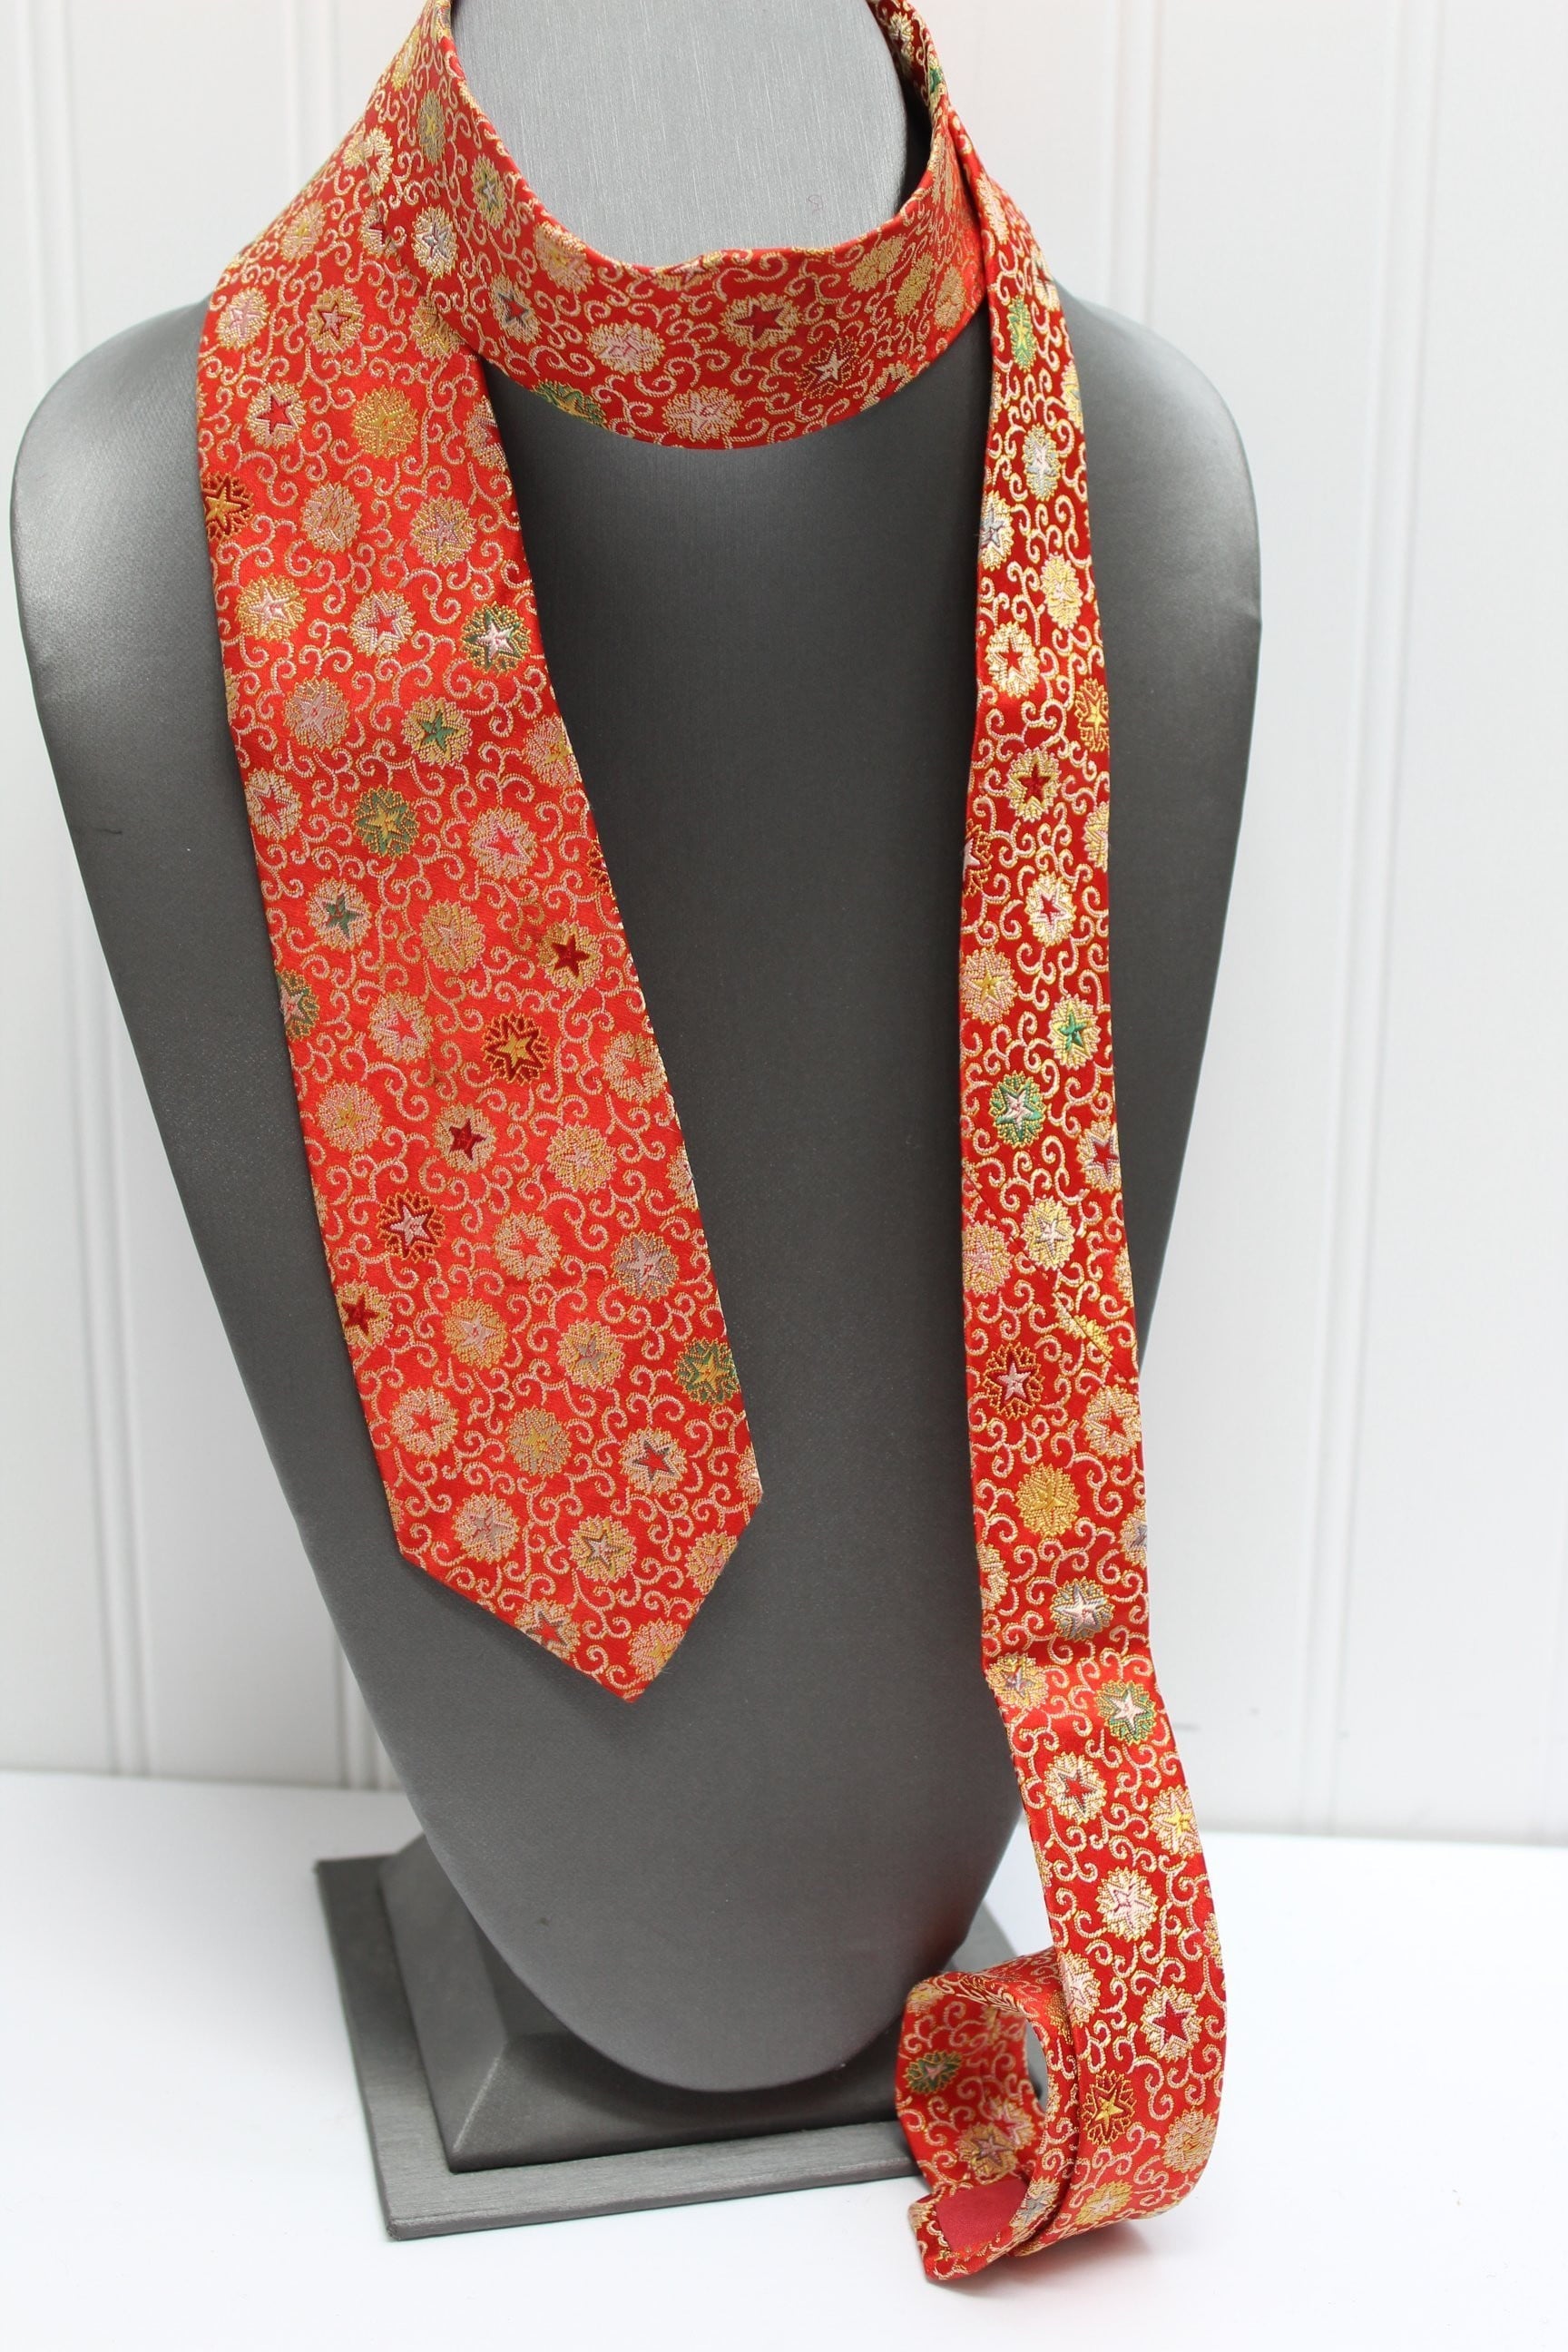 Vintage Skinny Necktie Top Style Tokyo Japan Silk Red Starburst